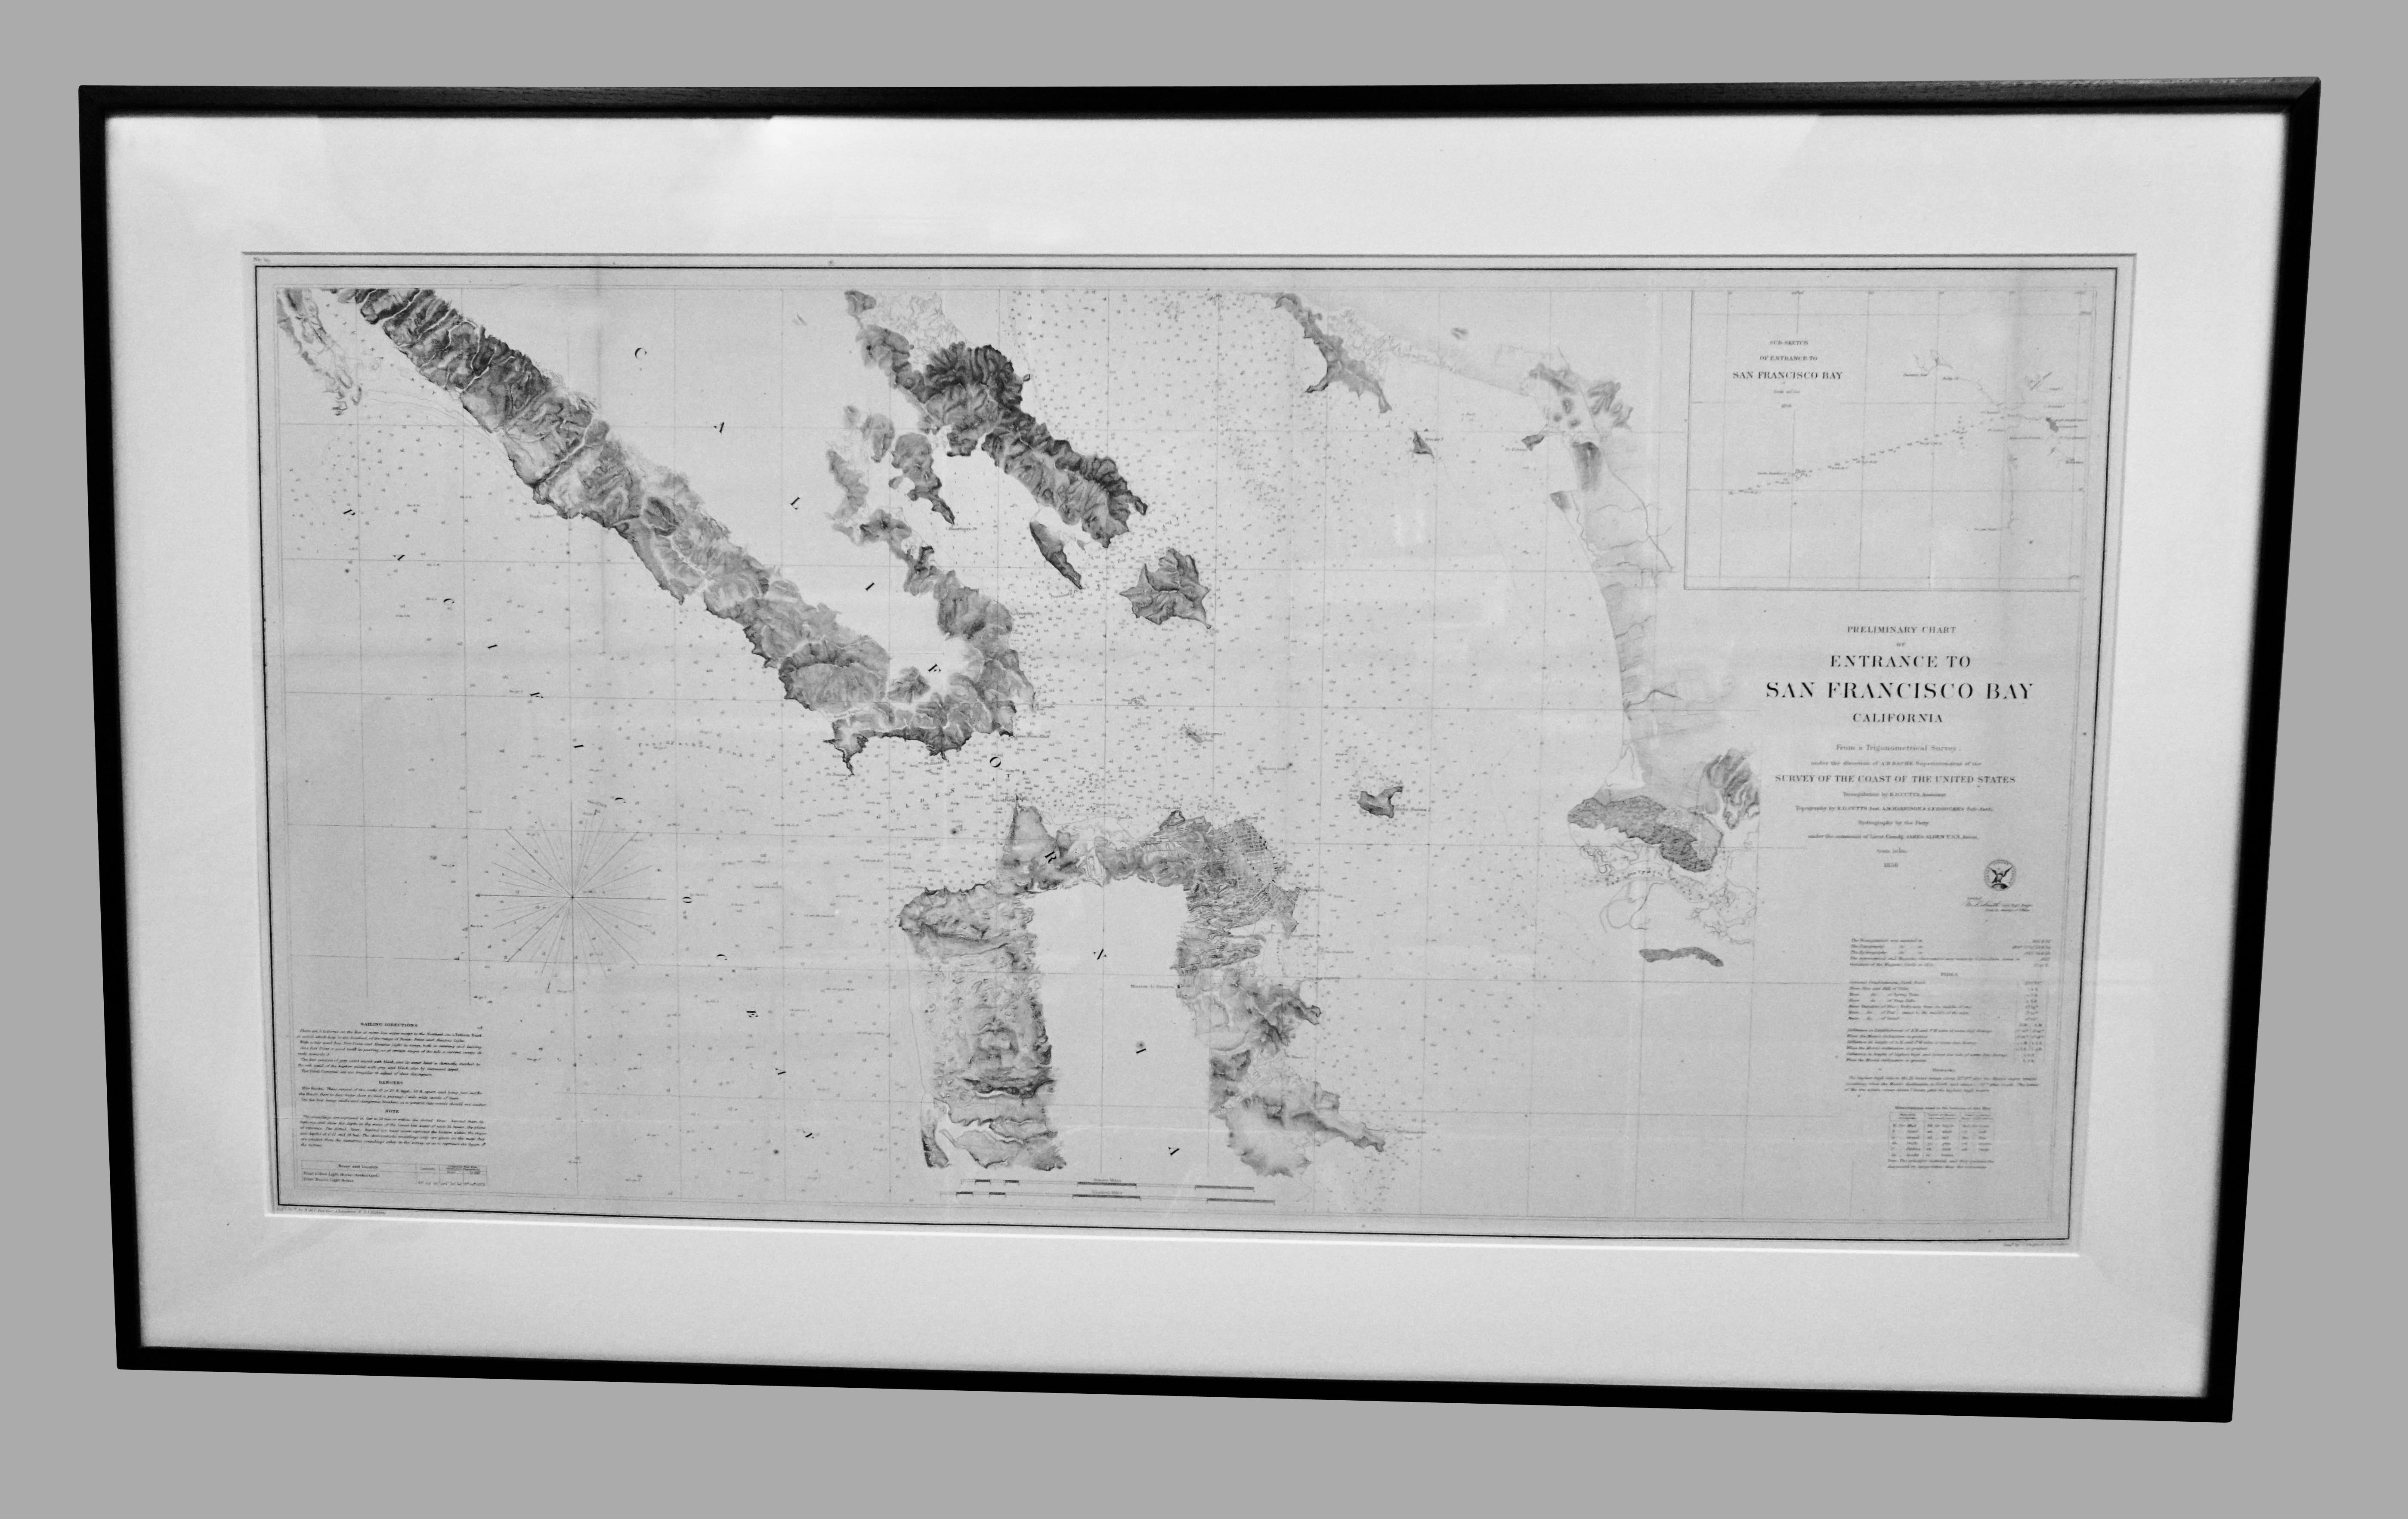 Ein schönes Beispiel für die 1856 U.S. Coast lithographic survey nautische Karte der Einfahrt in die Bucht von San Francisco und der Stadt. Veröffentlicht im Jahr 1856 vom Office of the Coast Survey, dem offiziellen Kartenhersteller der Vereinigten